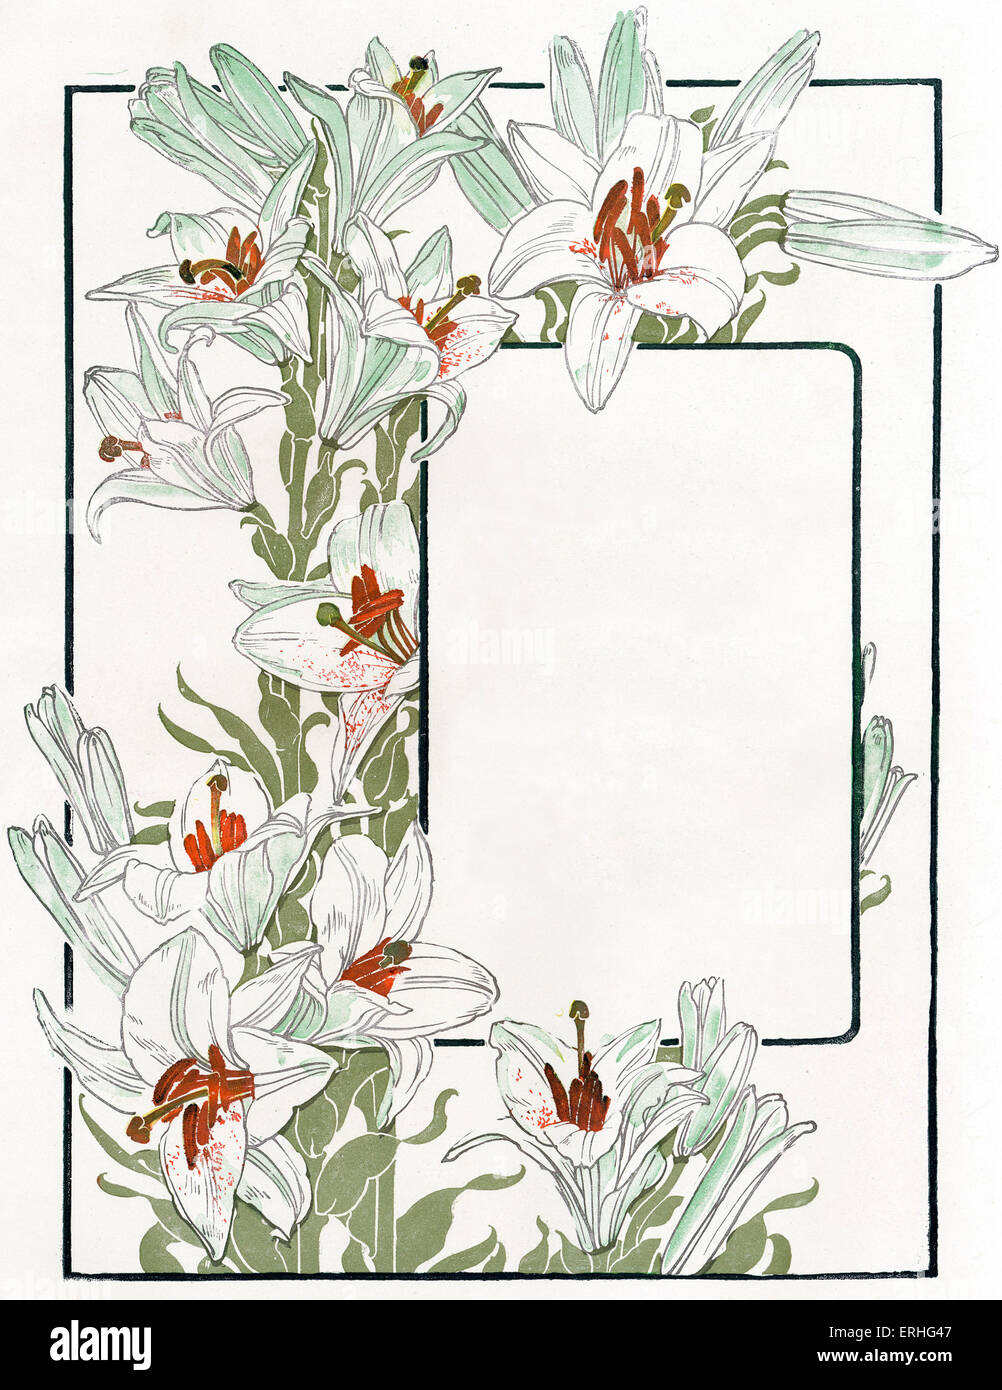 Frontière Floral - de joindre à la frontière, ou surround texte avec fleurs de printemps. Convient pour la page de titre, ex libris, carte de vœux, Banque D'Images